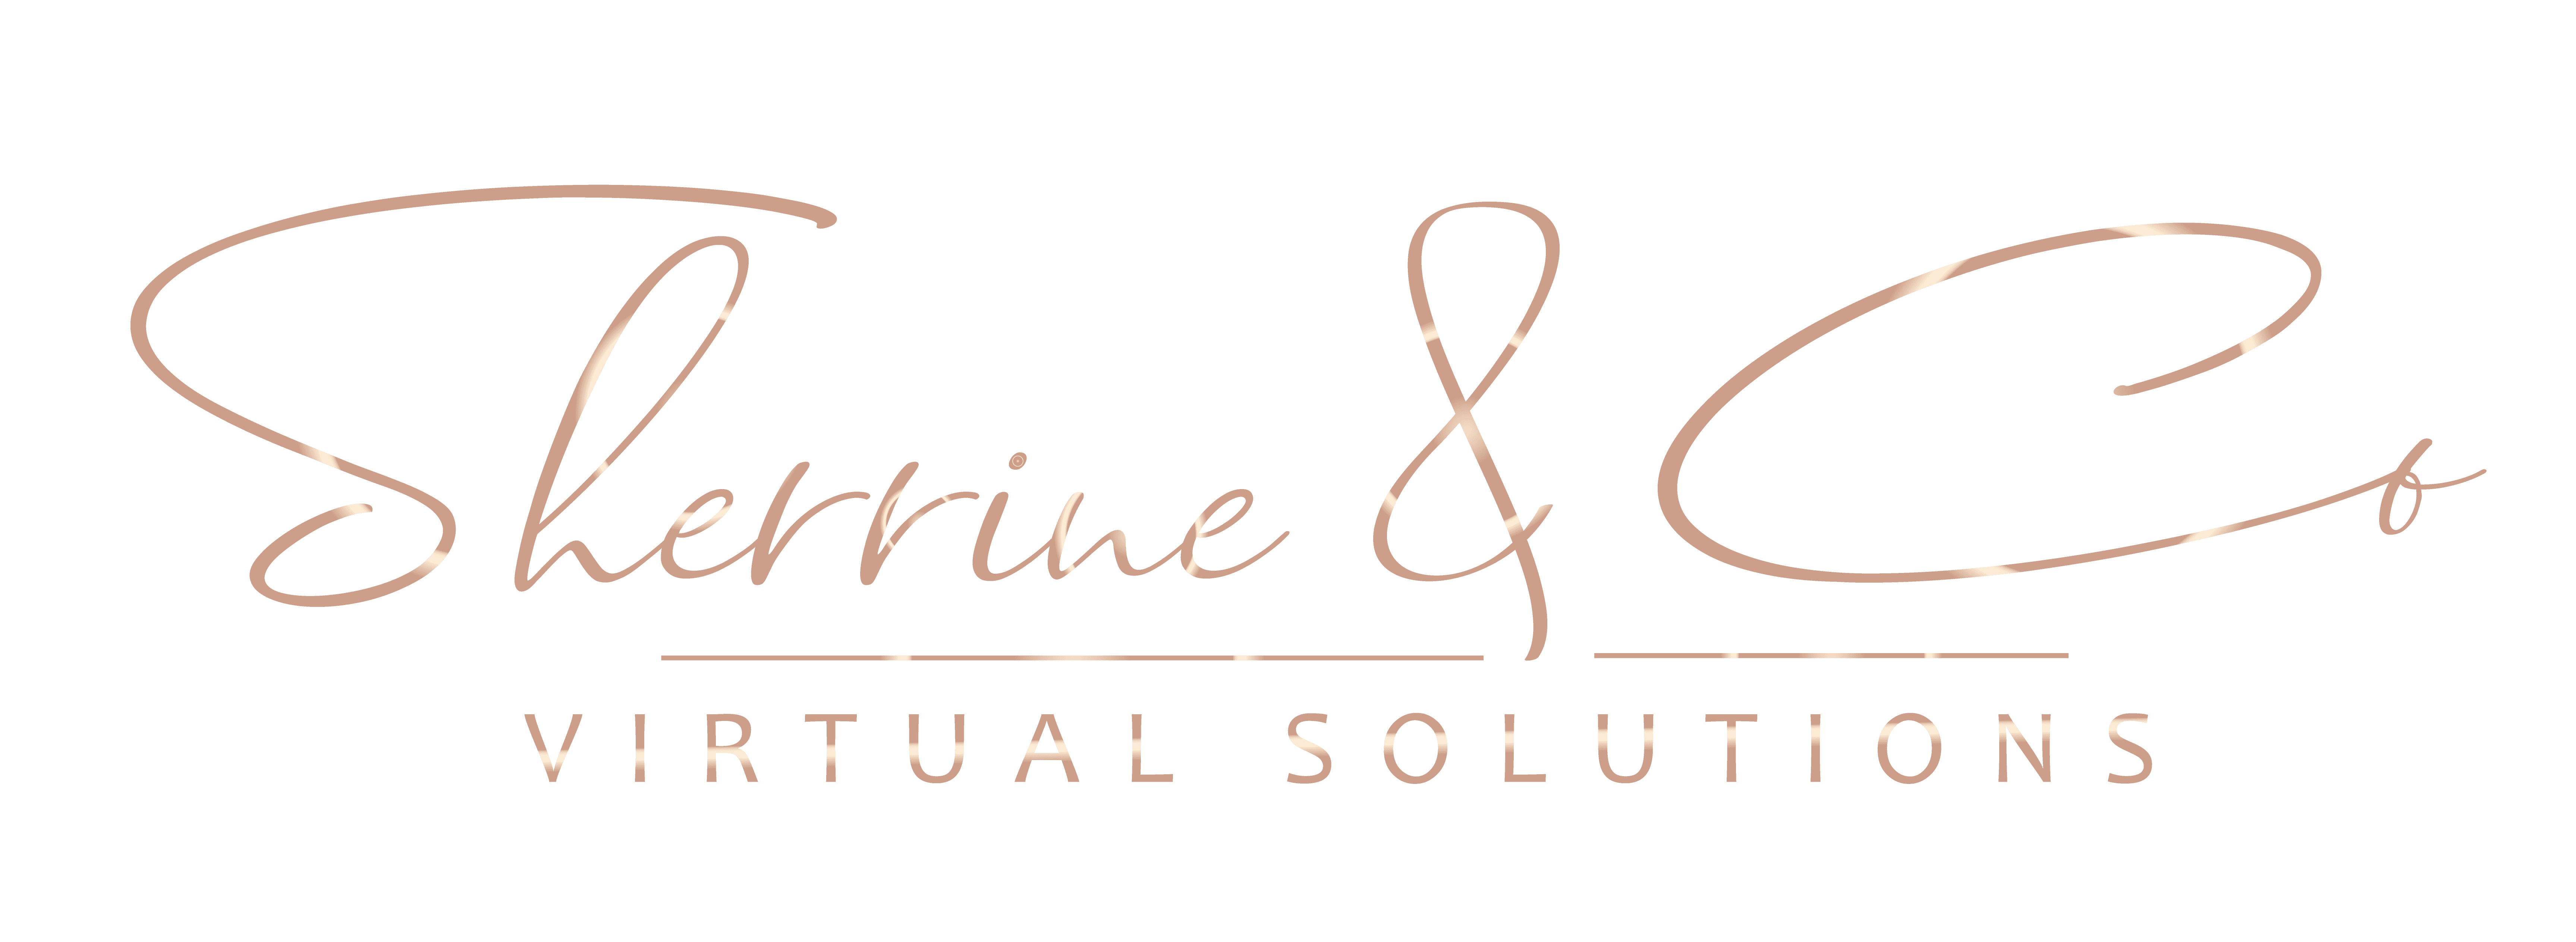 Sherrine & Co Virtual Solutions